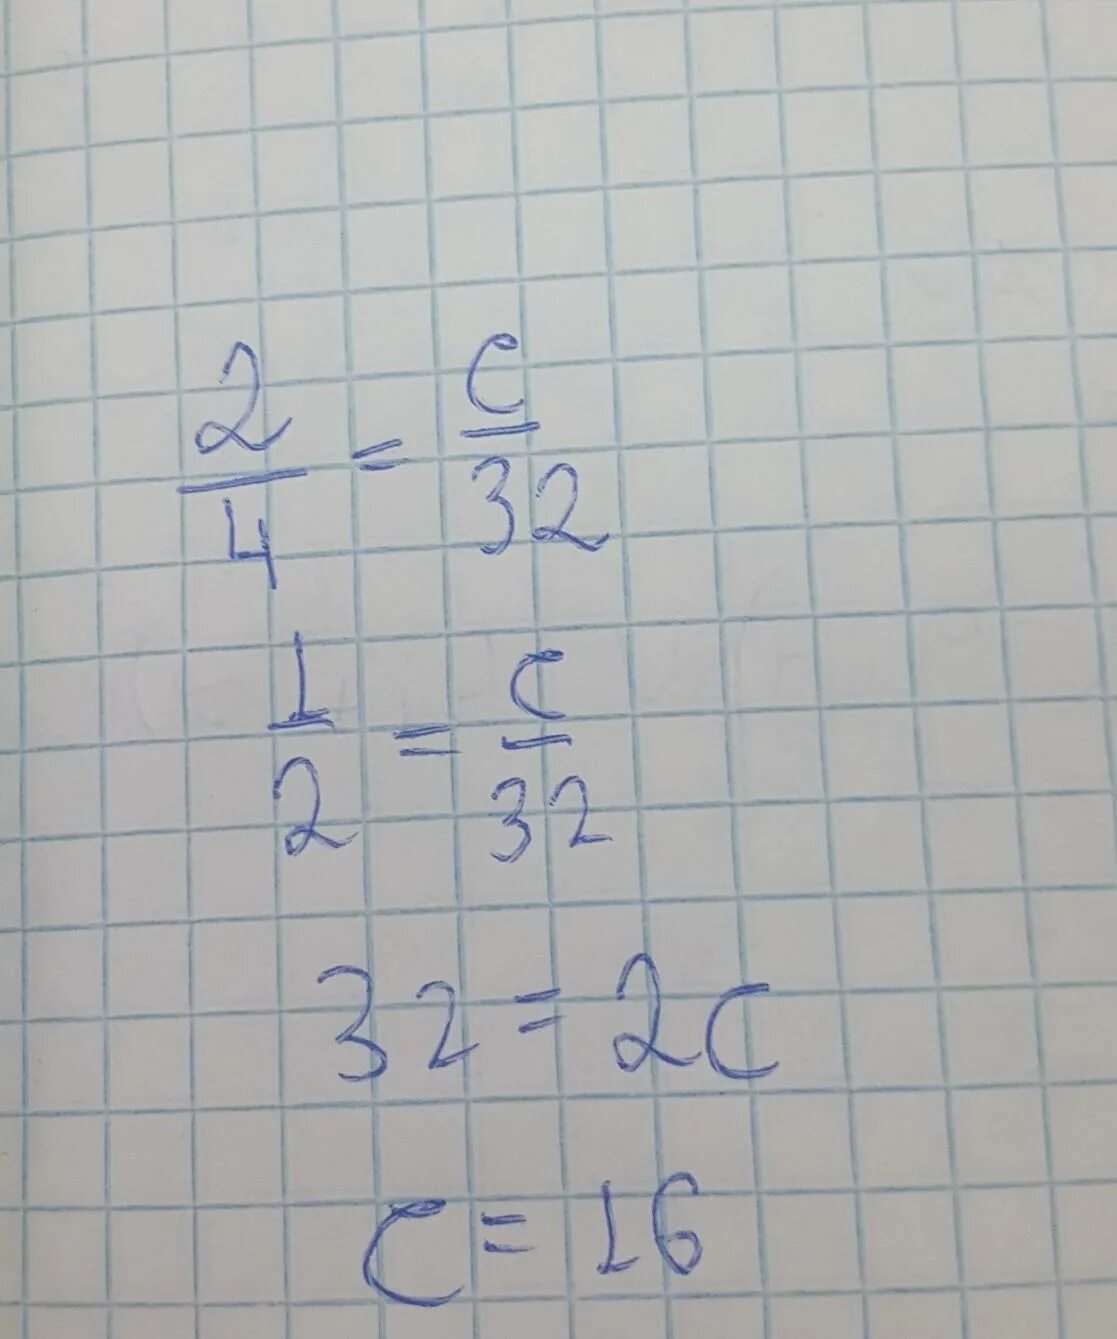 8 9 9 32 ответ. А2 пропорции. 3² Ответ.